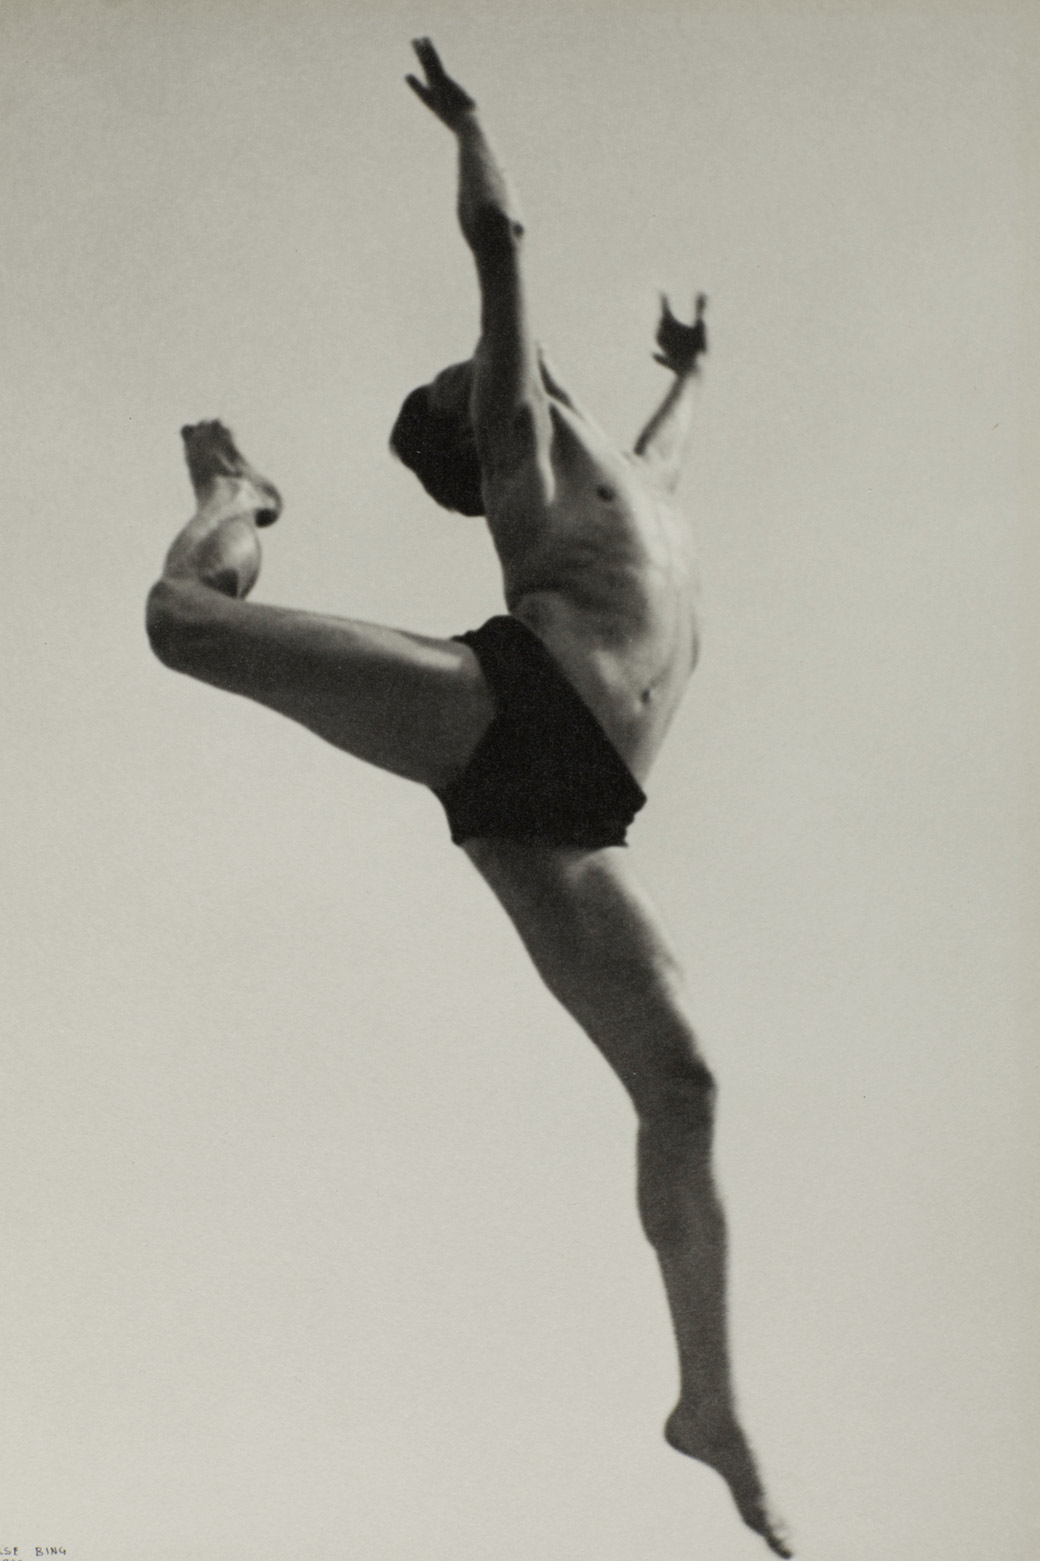 Dancer, Willem van Loon, Paris by Ilse Bing, 1932